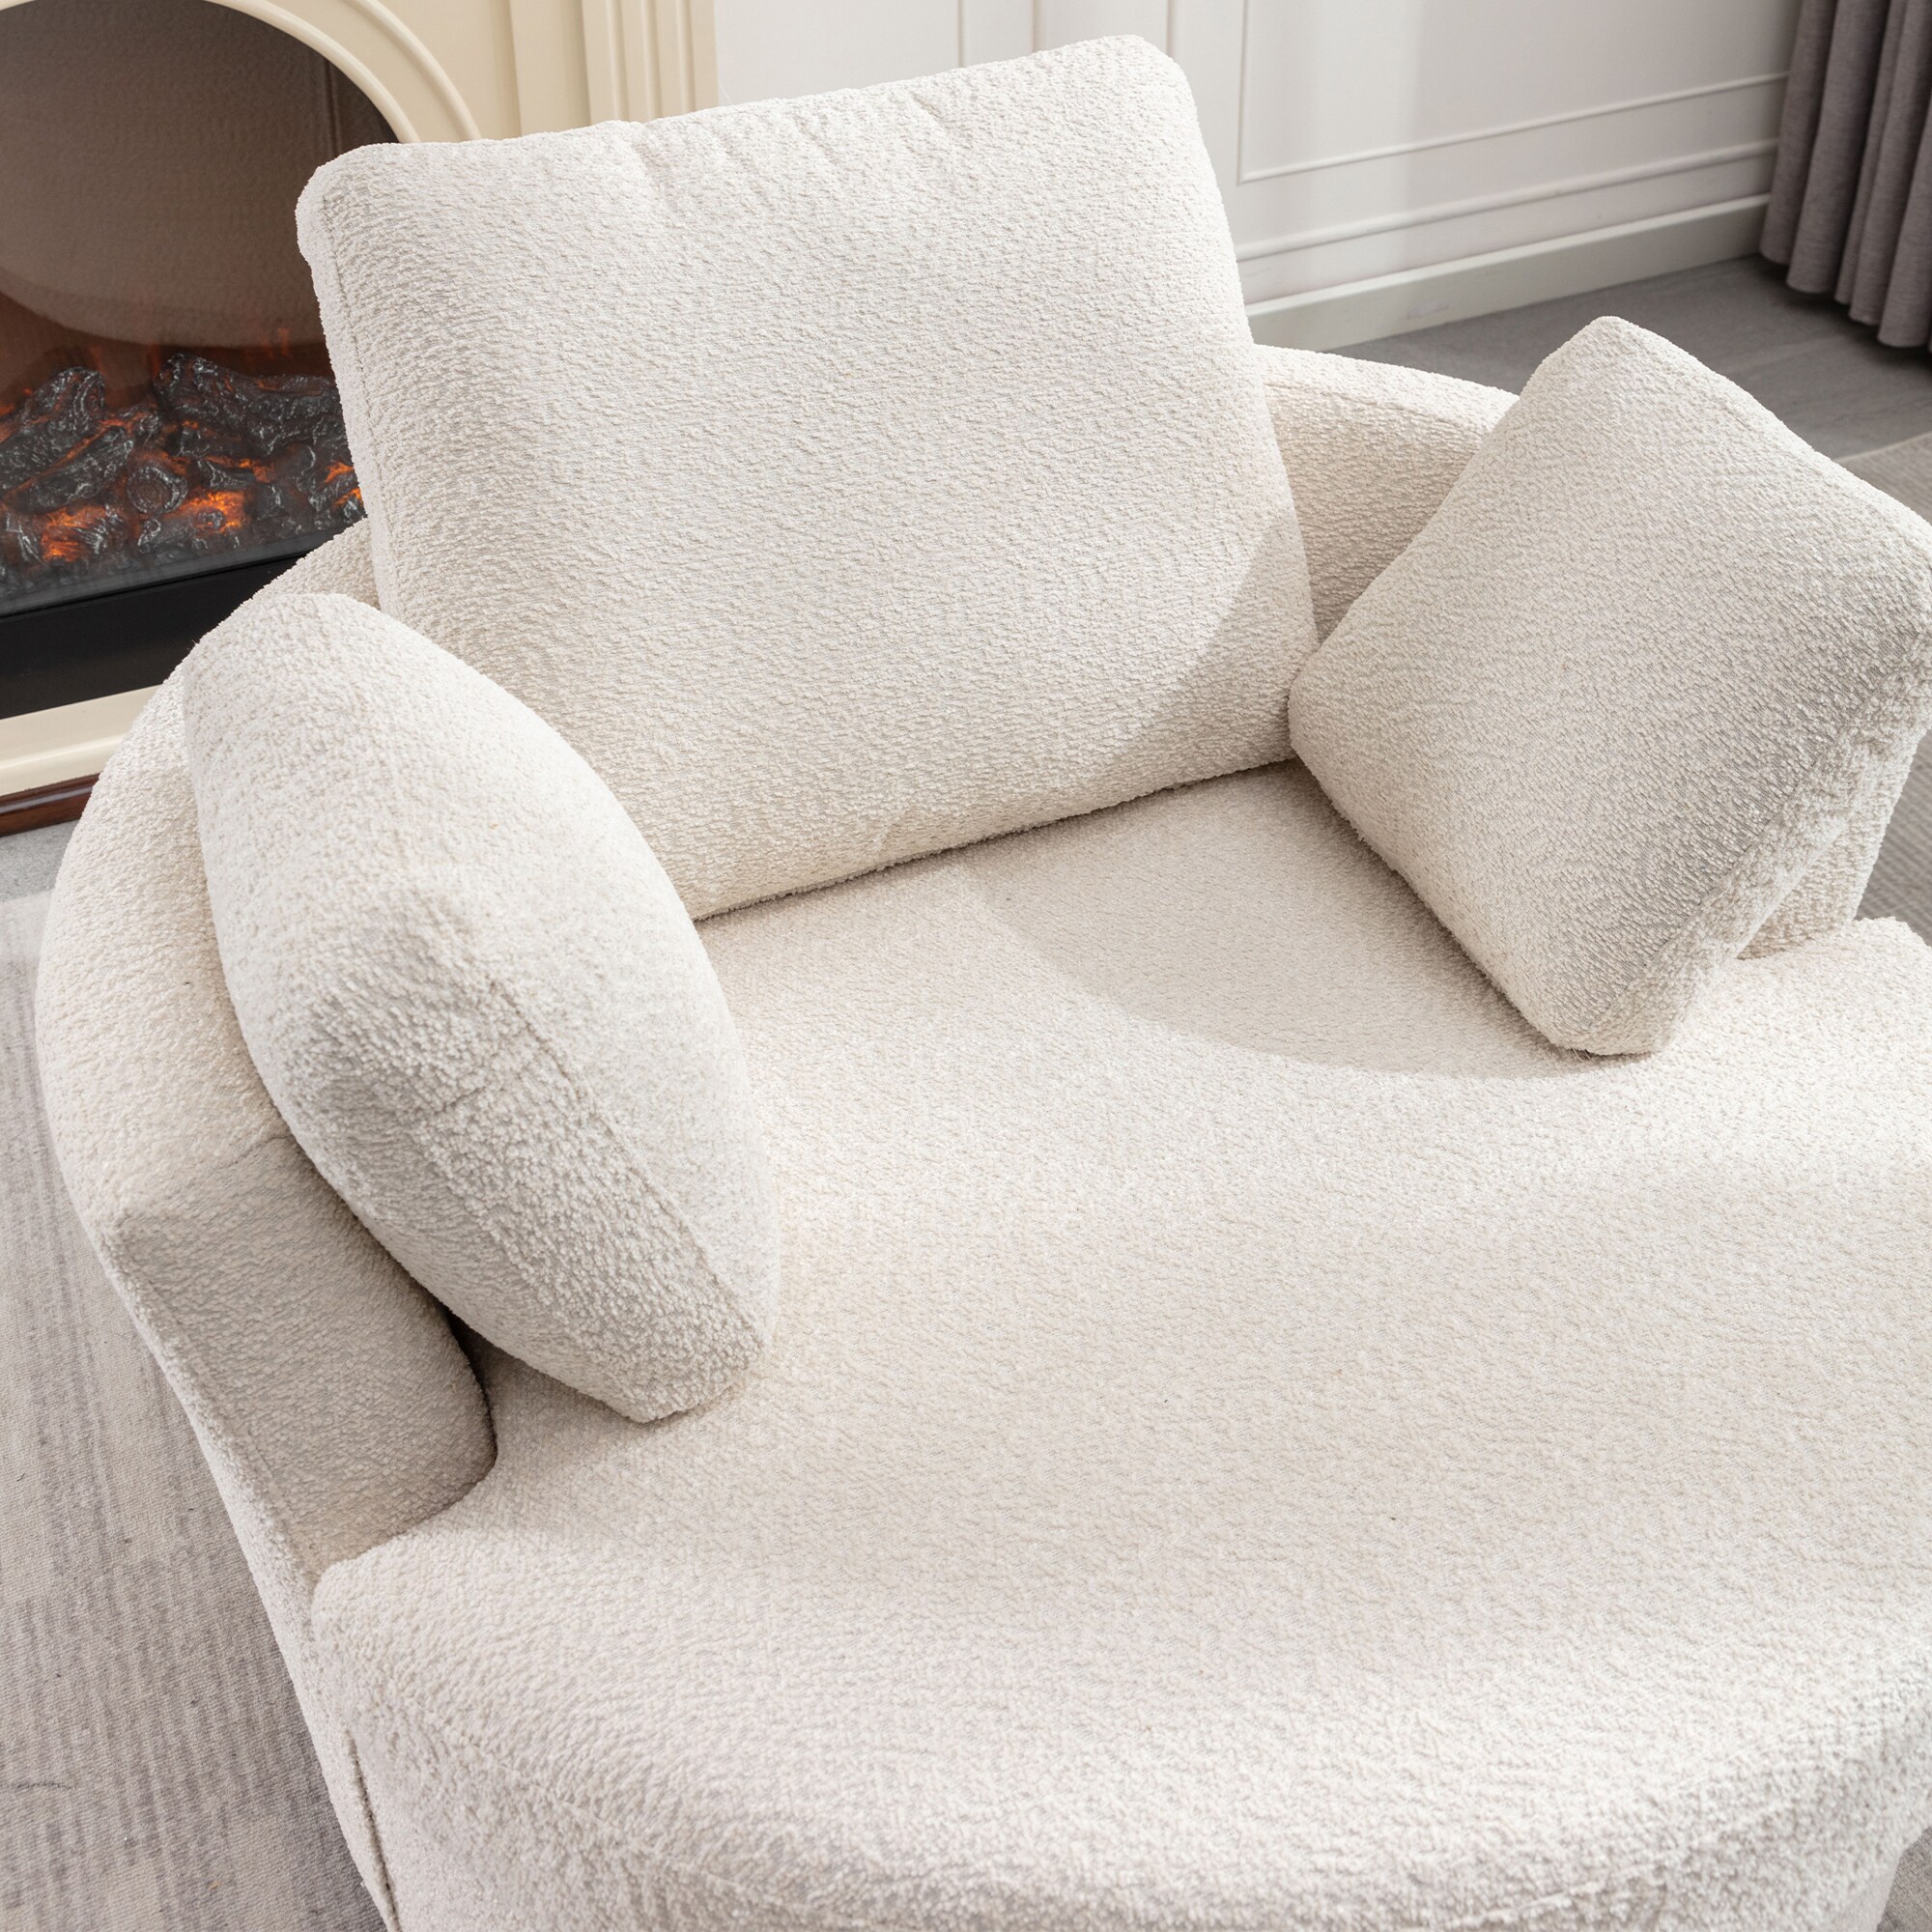 Resenkos Modern Swivel Barrel Chair for Living Room, Upholstered